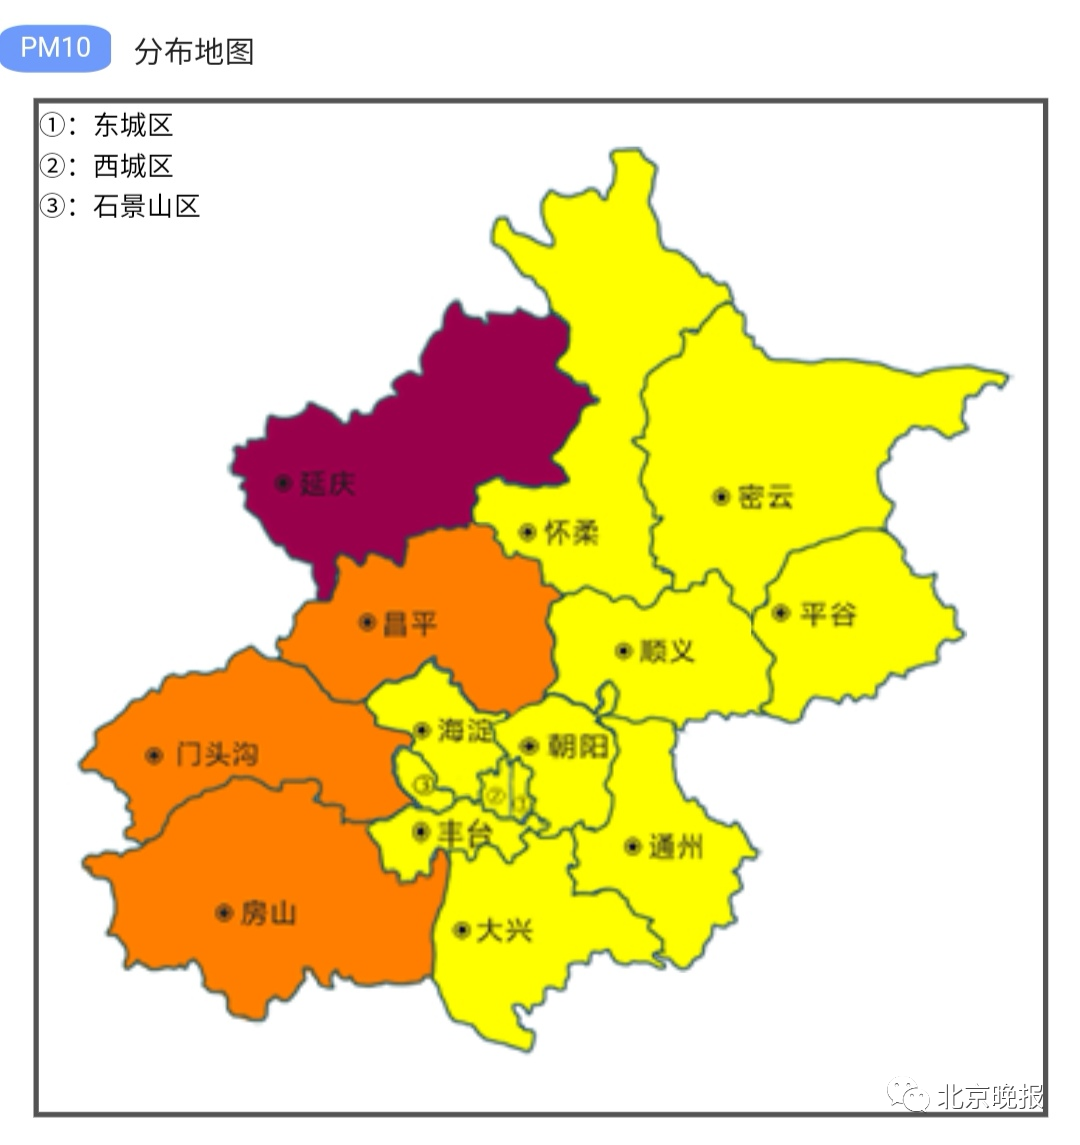 根据北京市生态环境监测中心预报21日白天本市受低压控制扩散条件不